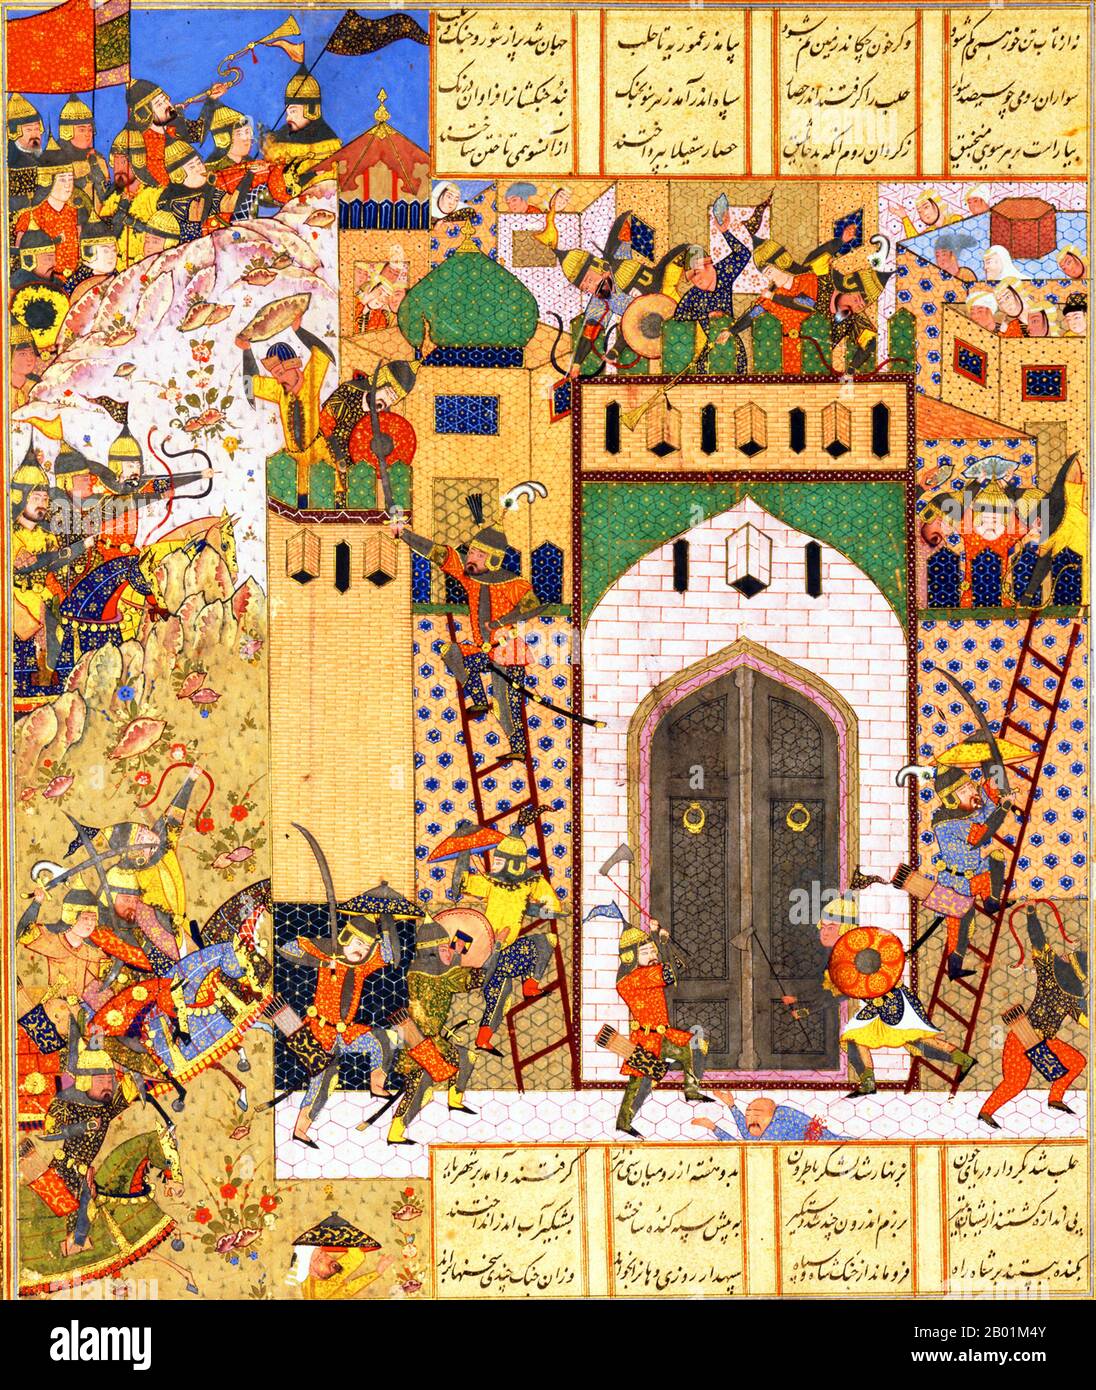 Iran/Persia: Shah Anushirvan cattura la fortezza di Saqila. Pittura in miniatura da una copia dello Shahnameh di Firdawsi, Shiraz, metà del XVI secolo. Lo Shahnameh o Shah-nama ("il libro dei re") è un lungo poema epico scritto dal poeta persiano Ferdowsi tra il 977 e il 1010 d.C. ed è il poema epico nazionale dell'Iran e delle relative culture persiano-iraniane. Costituito da circa 60.000 versi, lo Shahnameh racconta il passato mitico e in qualche misura storico del grande Iran dalla creazione del mondo fino alla conquista islamica della Persia nel VII secolo. Foto Stock